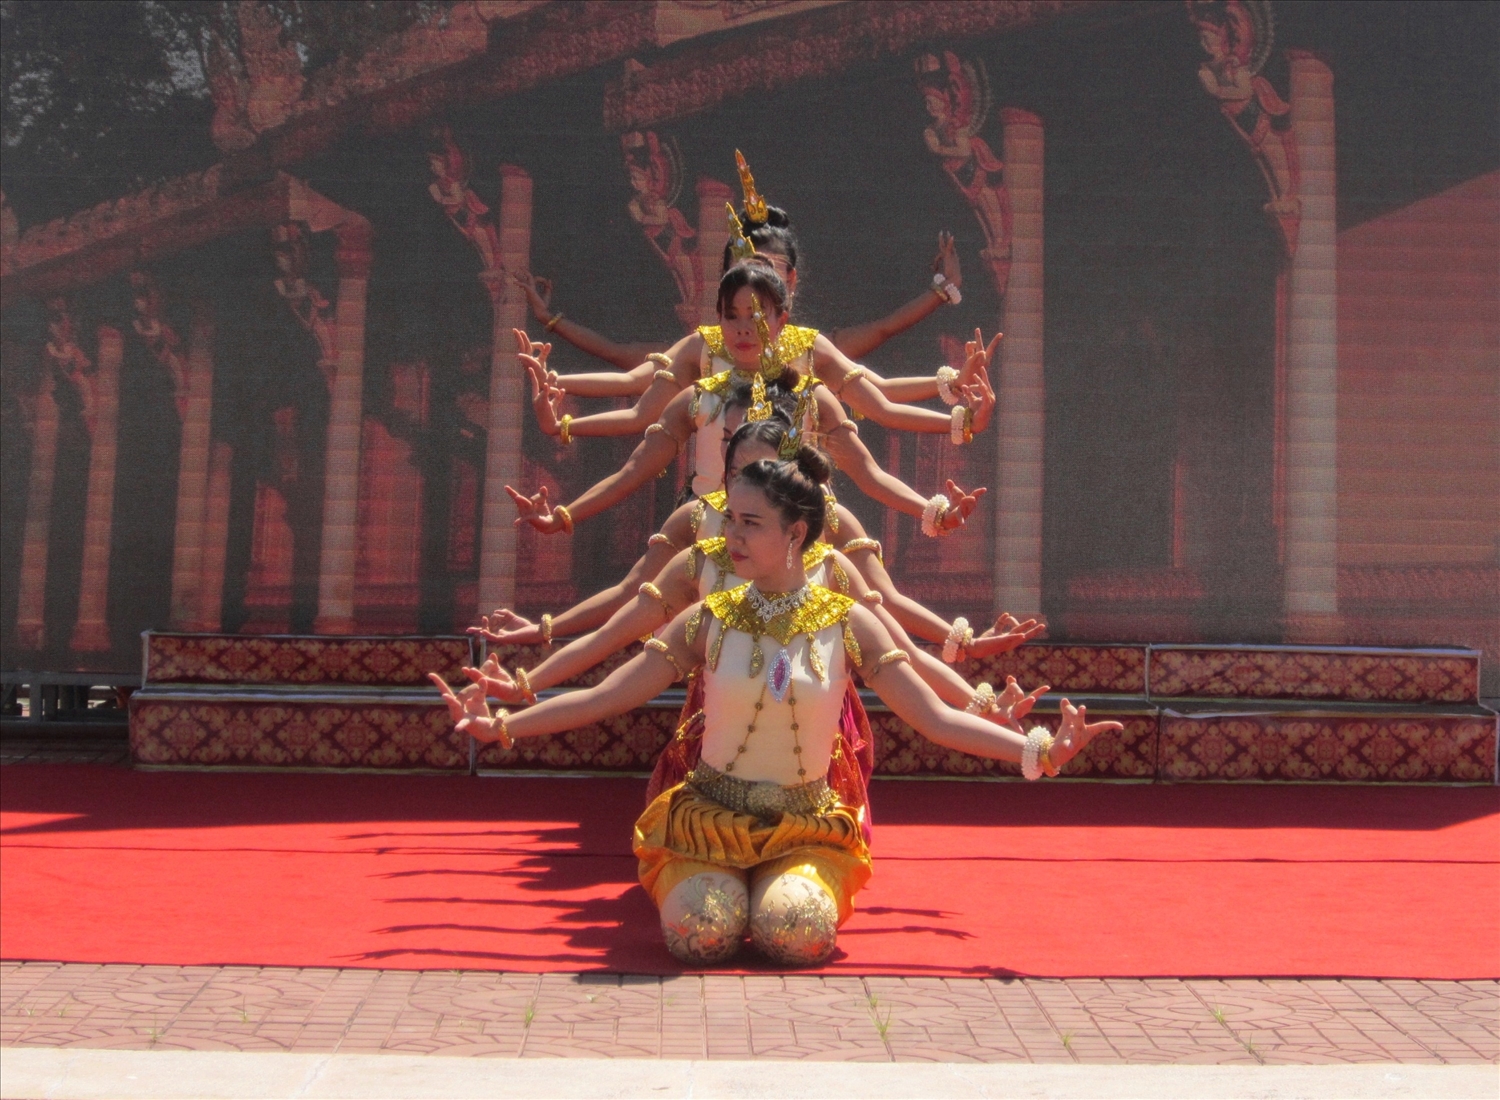 Điệu múa Apsara của Đoàn nghệ thuật Khmer tỉnh Sóc Trăng, các động tác sử dụng phải thật uyển chuyển với trang phục sử dụng lấp lánh, sang trọng.